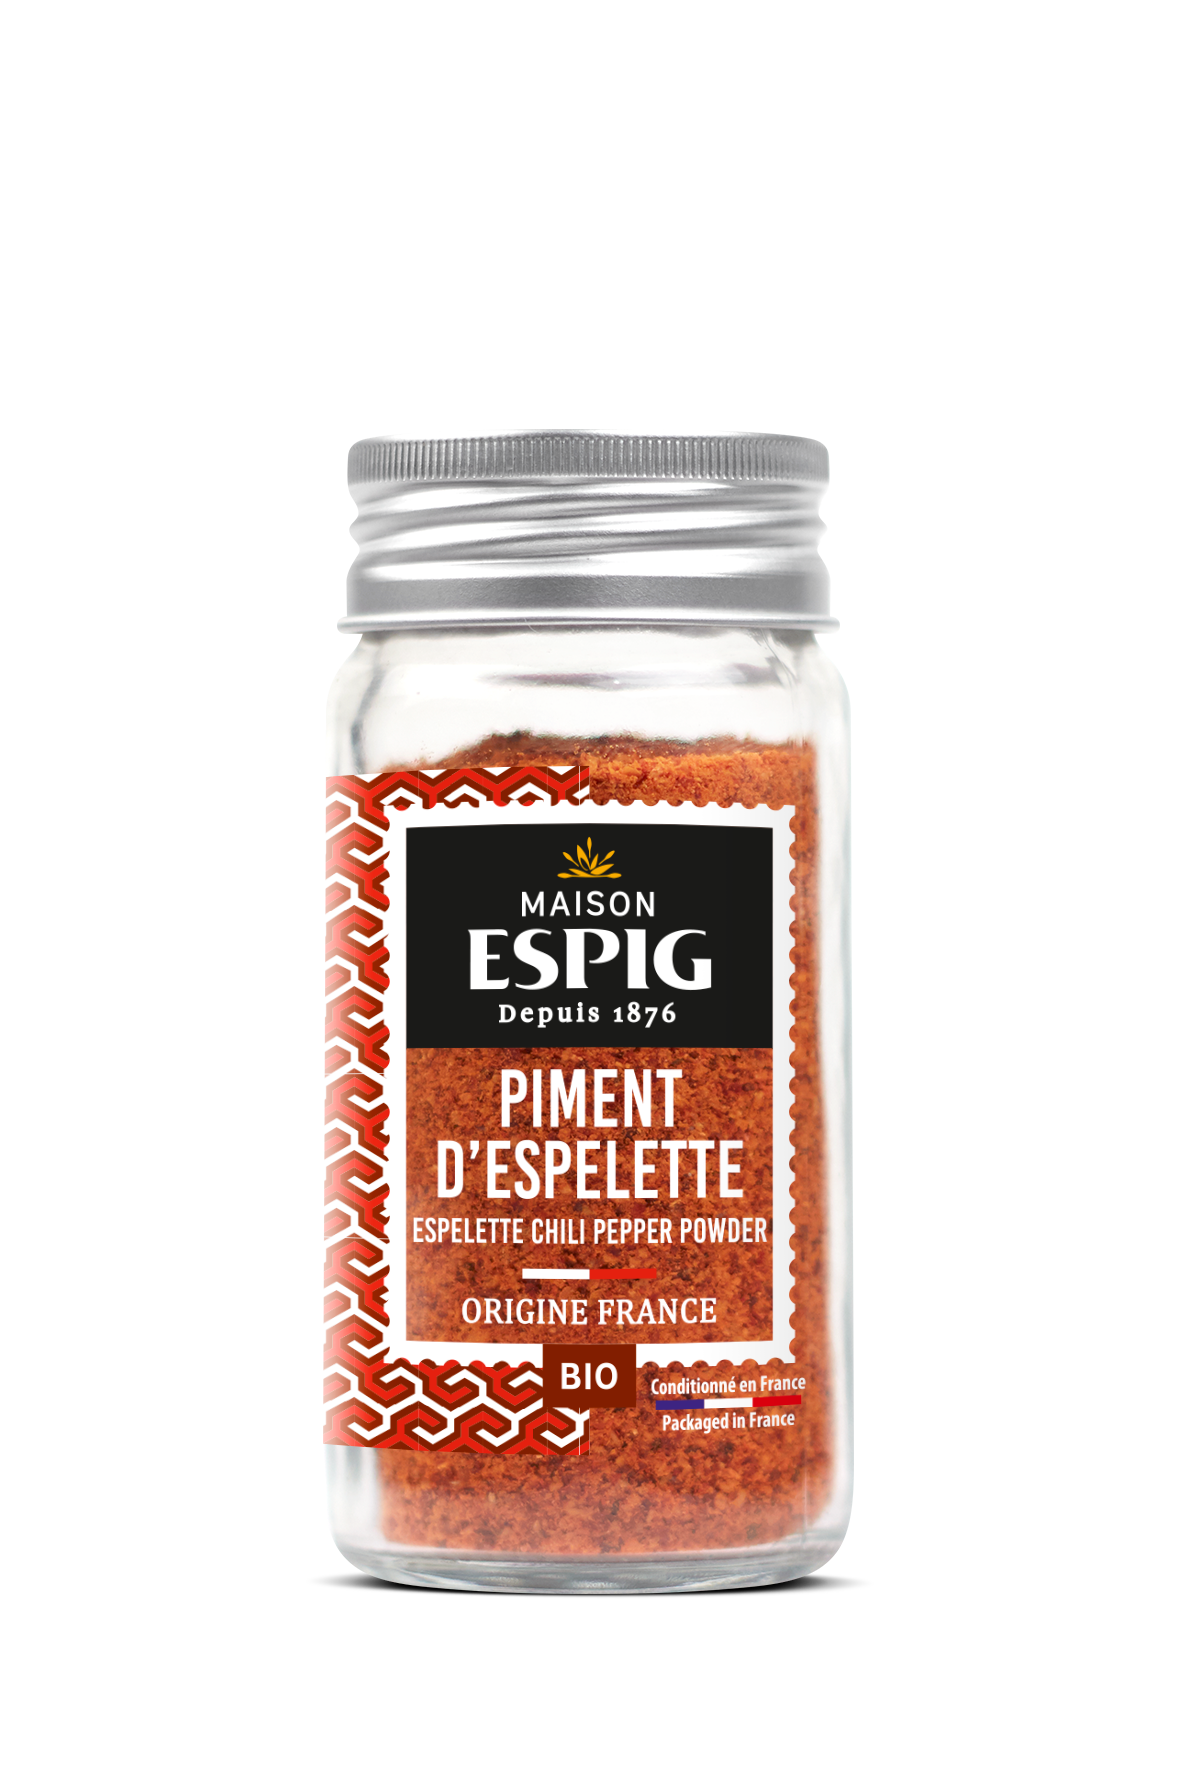 Maison Espig Organic Espelette Chili Pepper Powder, Glass Jar 40g